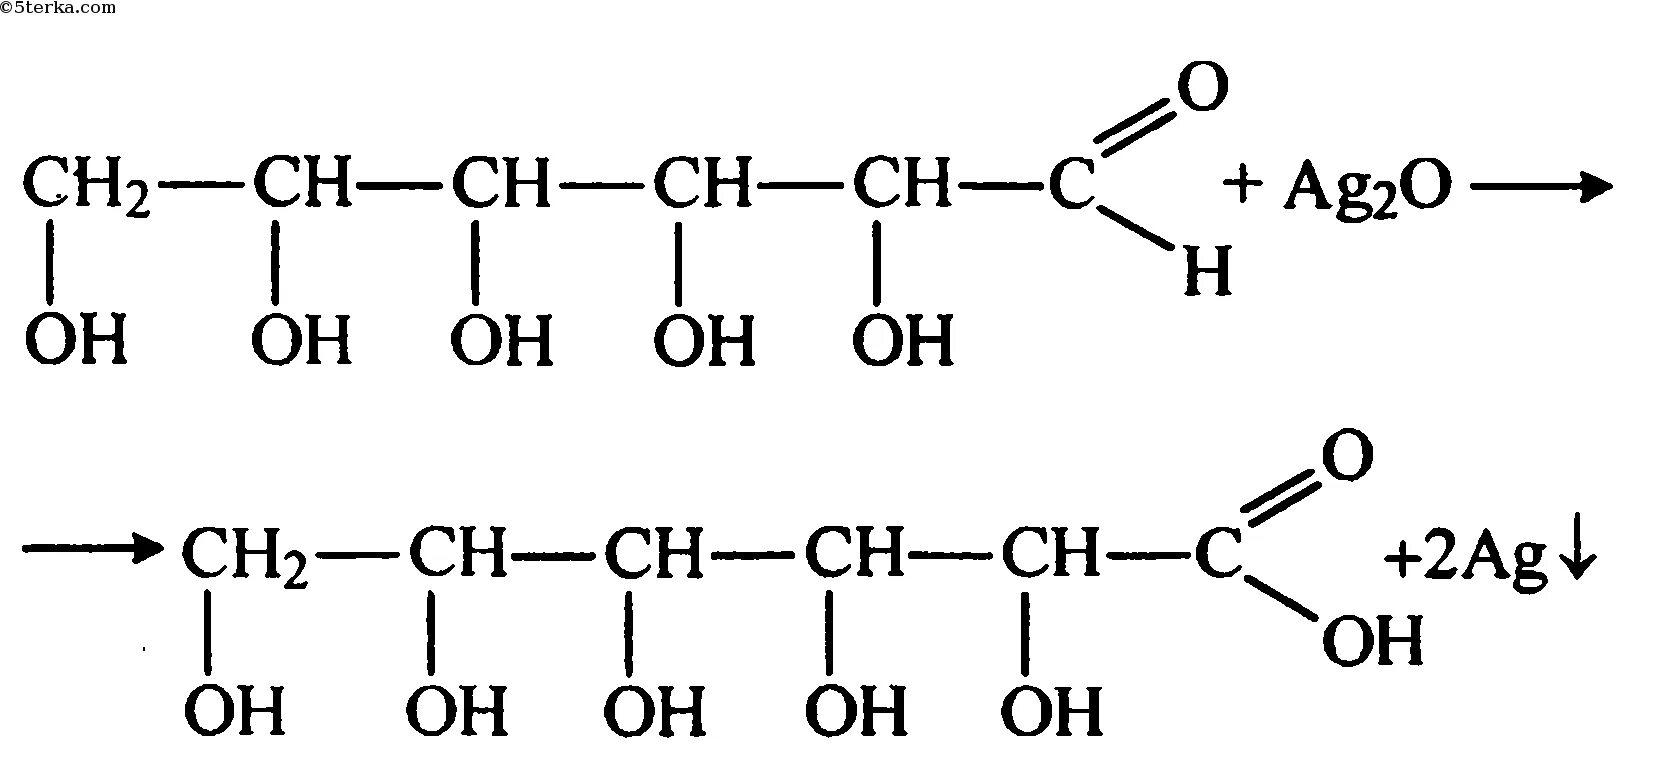 C6h12o6 Глюкоза. Глюкоза ag2o уравнение реакции. Глюкоза вещество с двойственной функцией альдегидоспирт. Химические реакции Глюкозы.